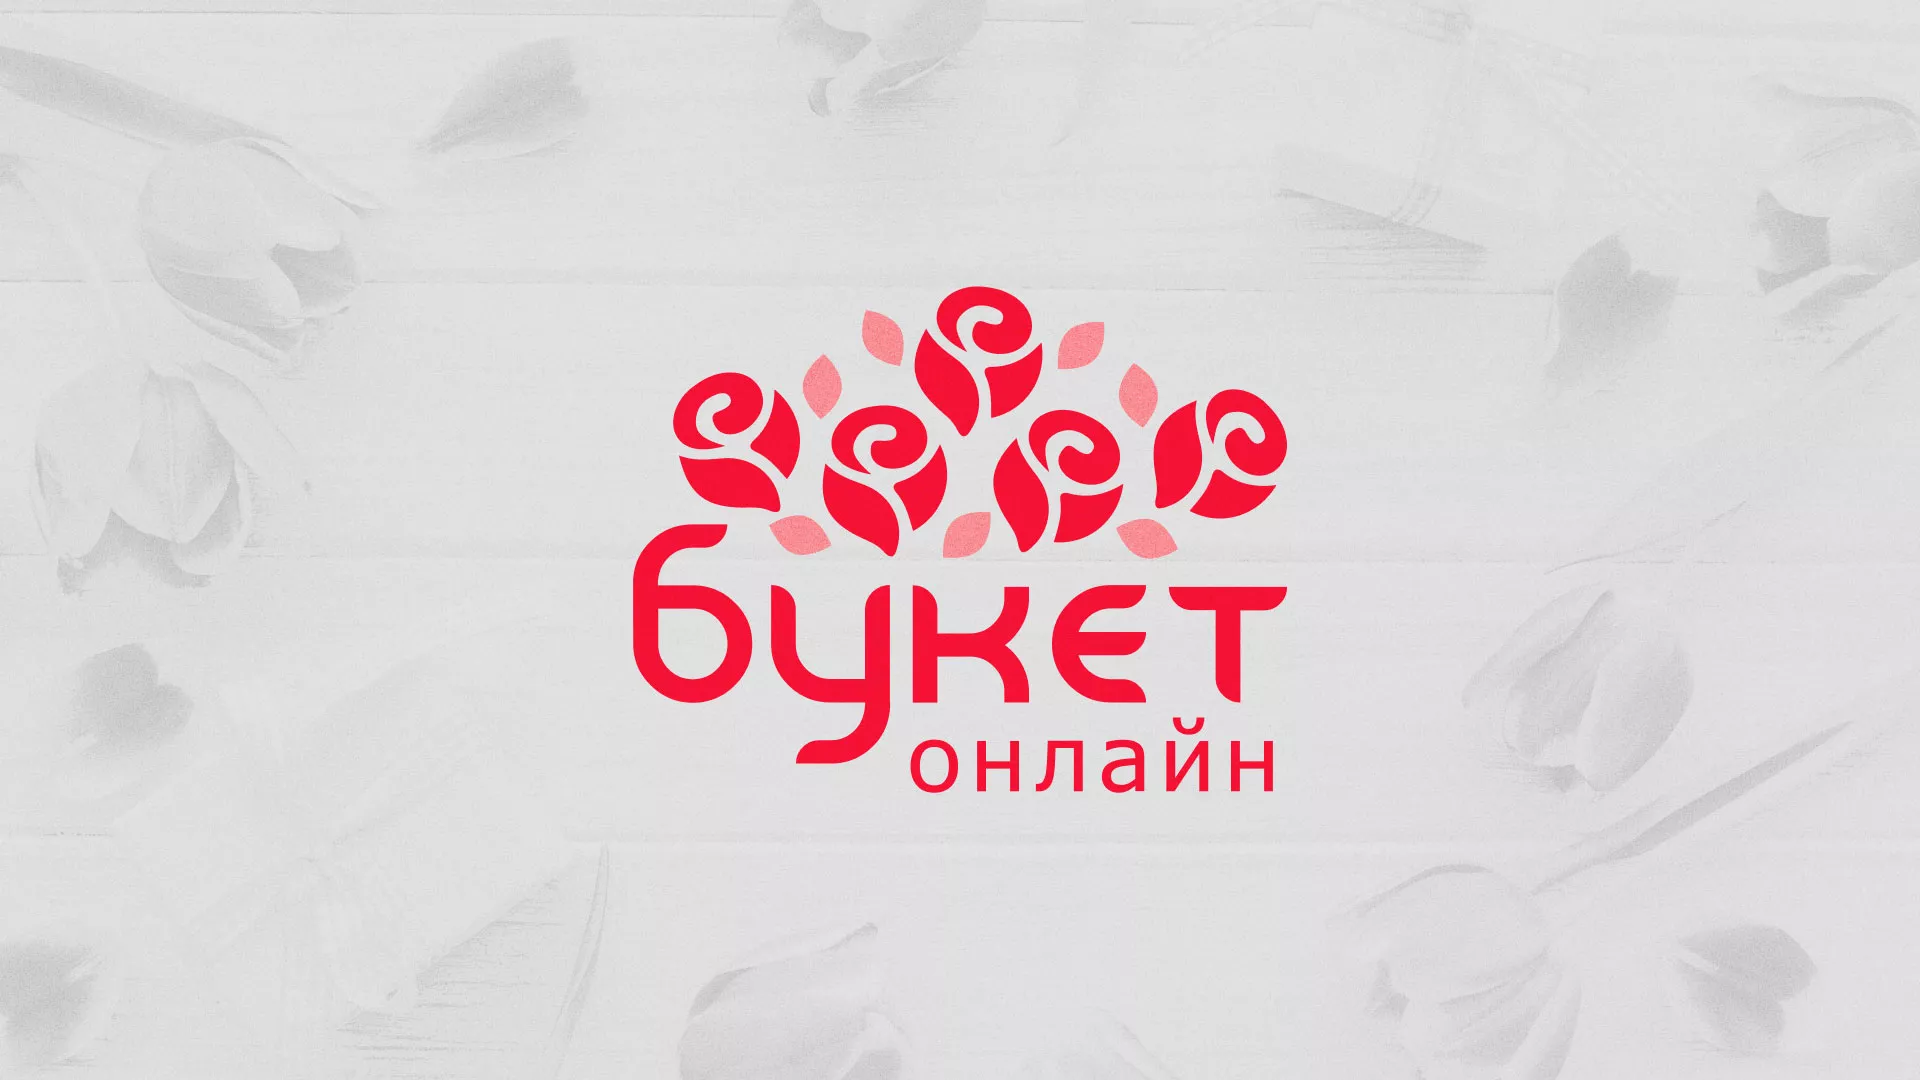 Создание интернет-магазина «Букет-онлайн» по цветам в Бутурлиновке